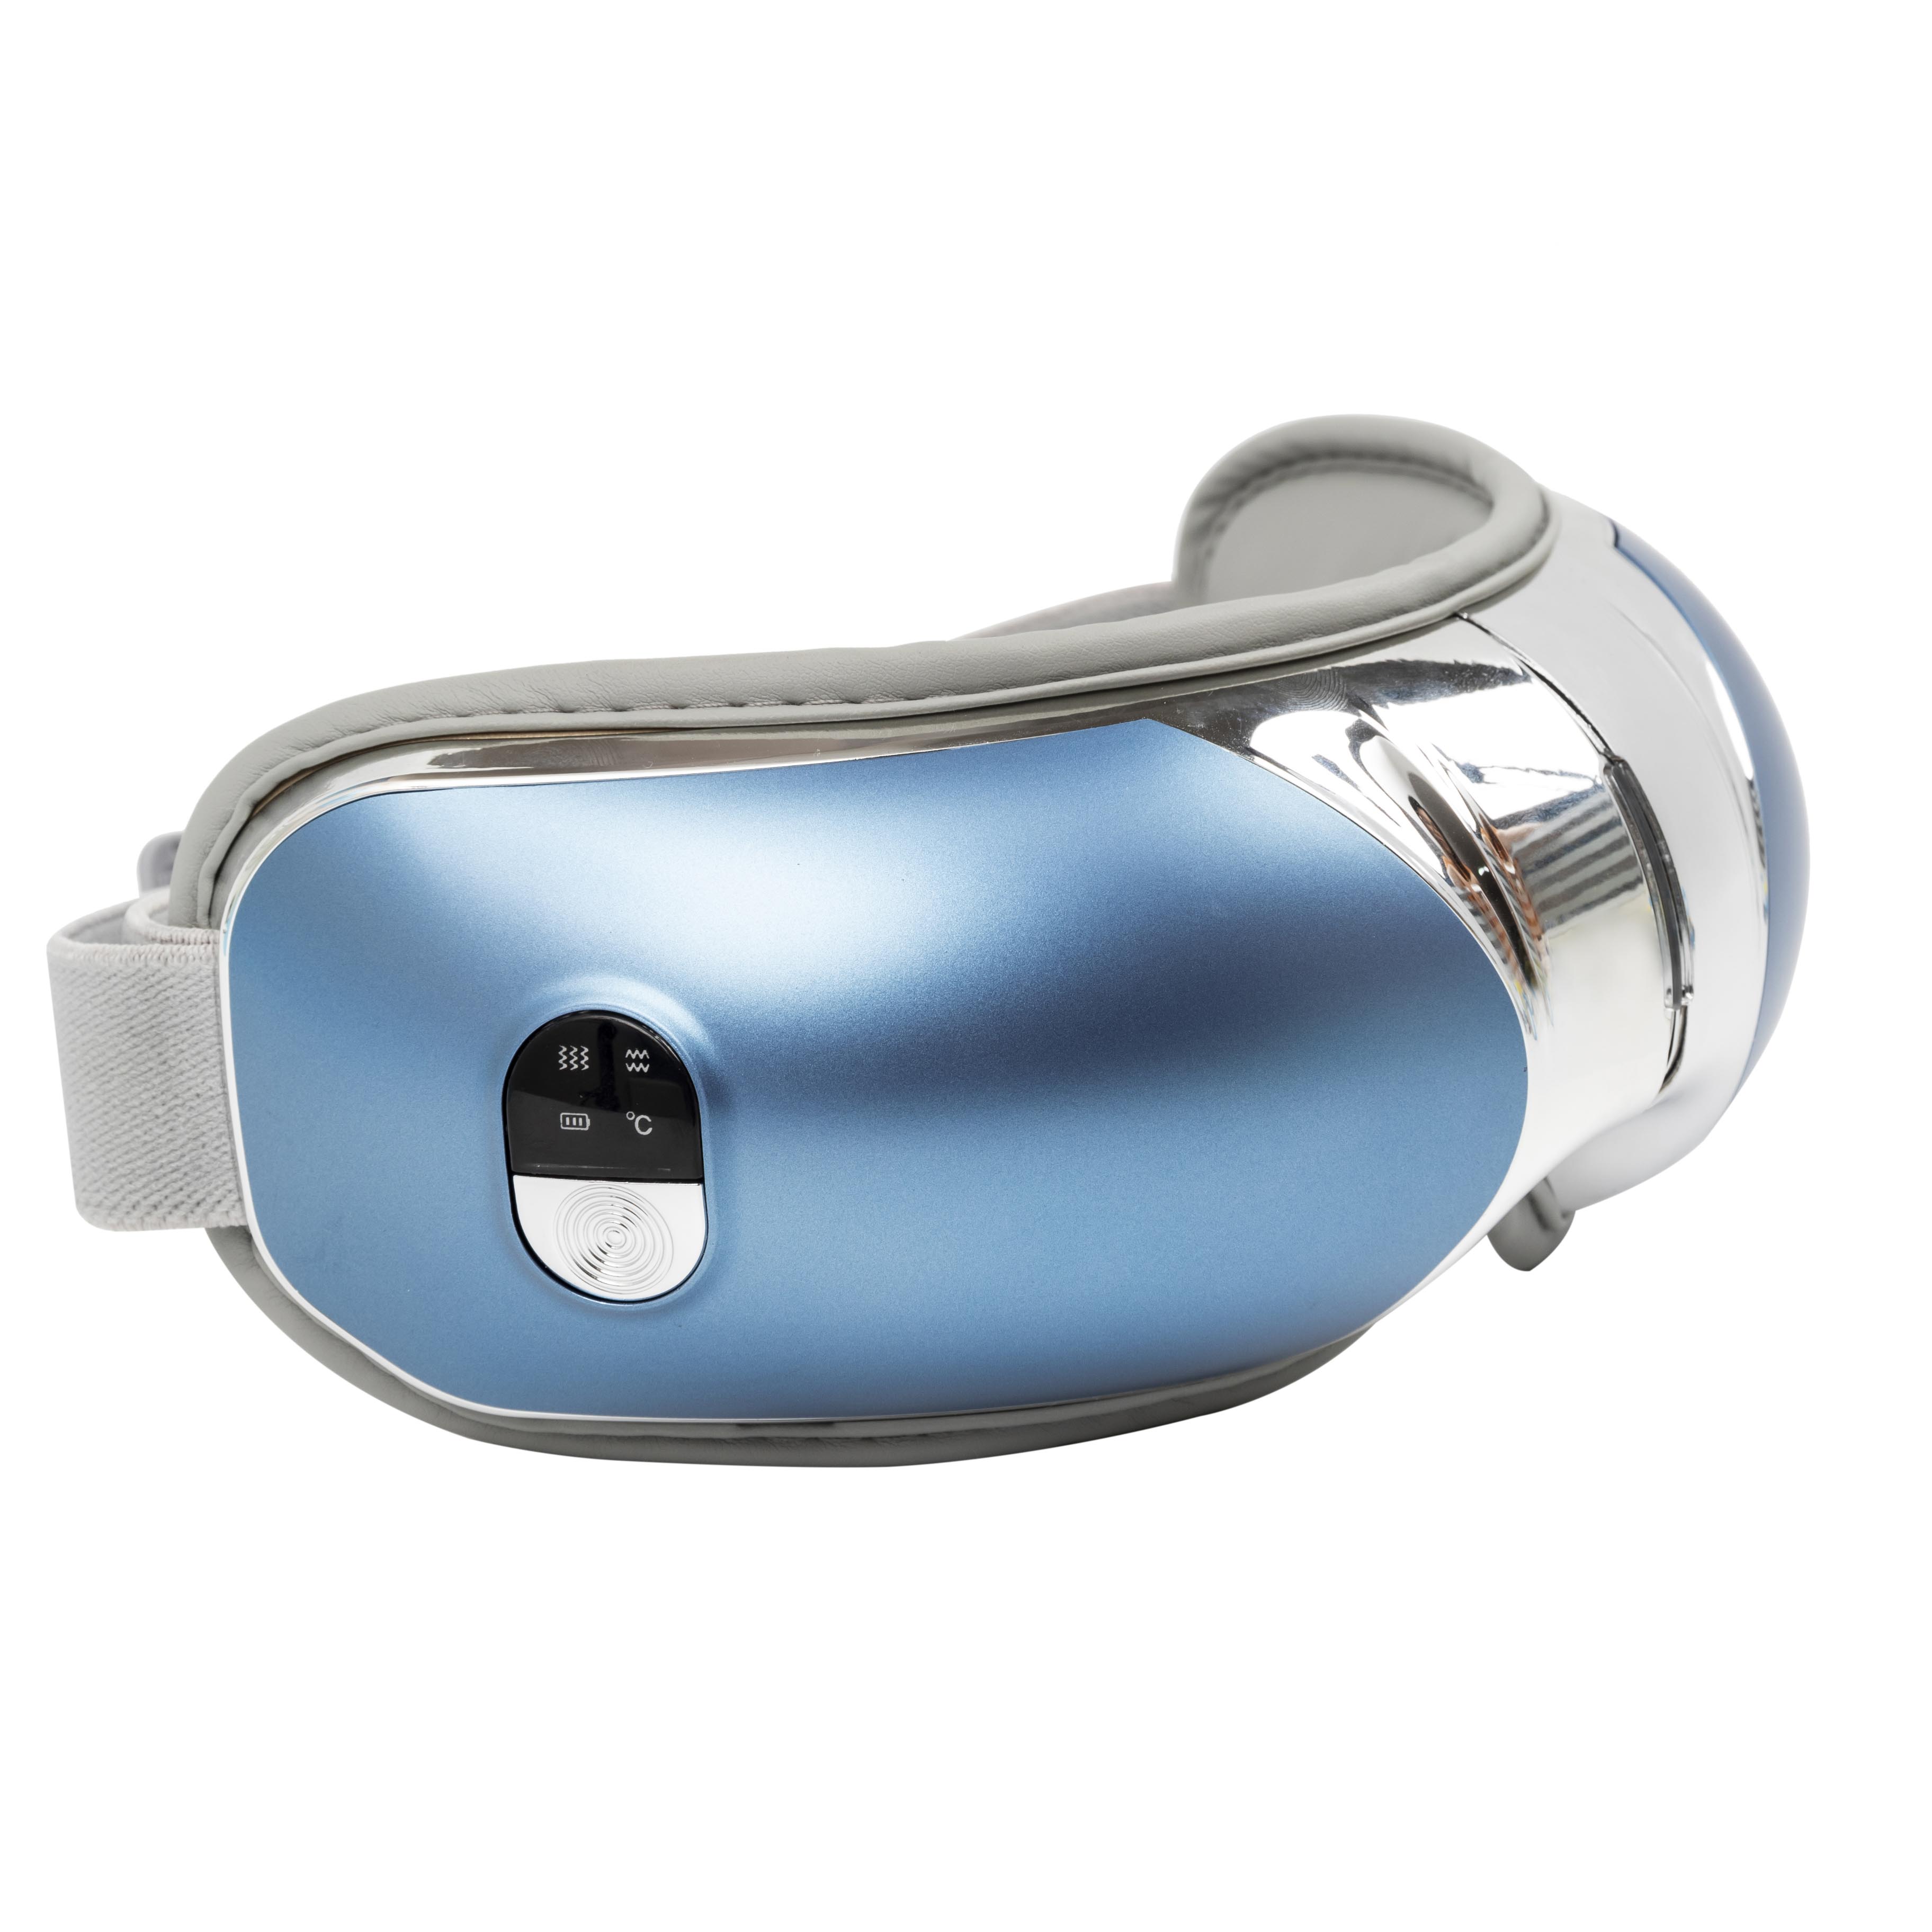 Nuevo estilo Smart 4D Dispositivo de protección ocular Templo Terapia de amasado Masaje Masajeador de ojos inteligente